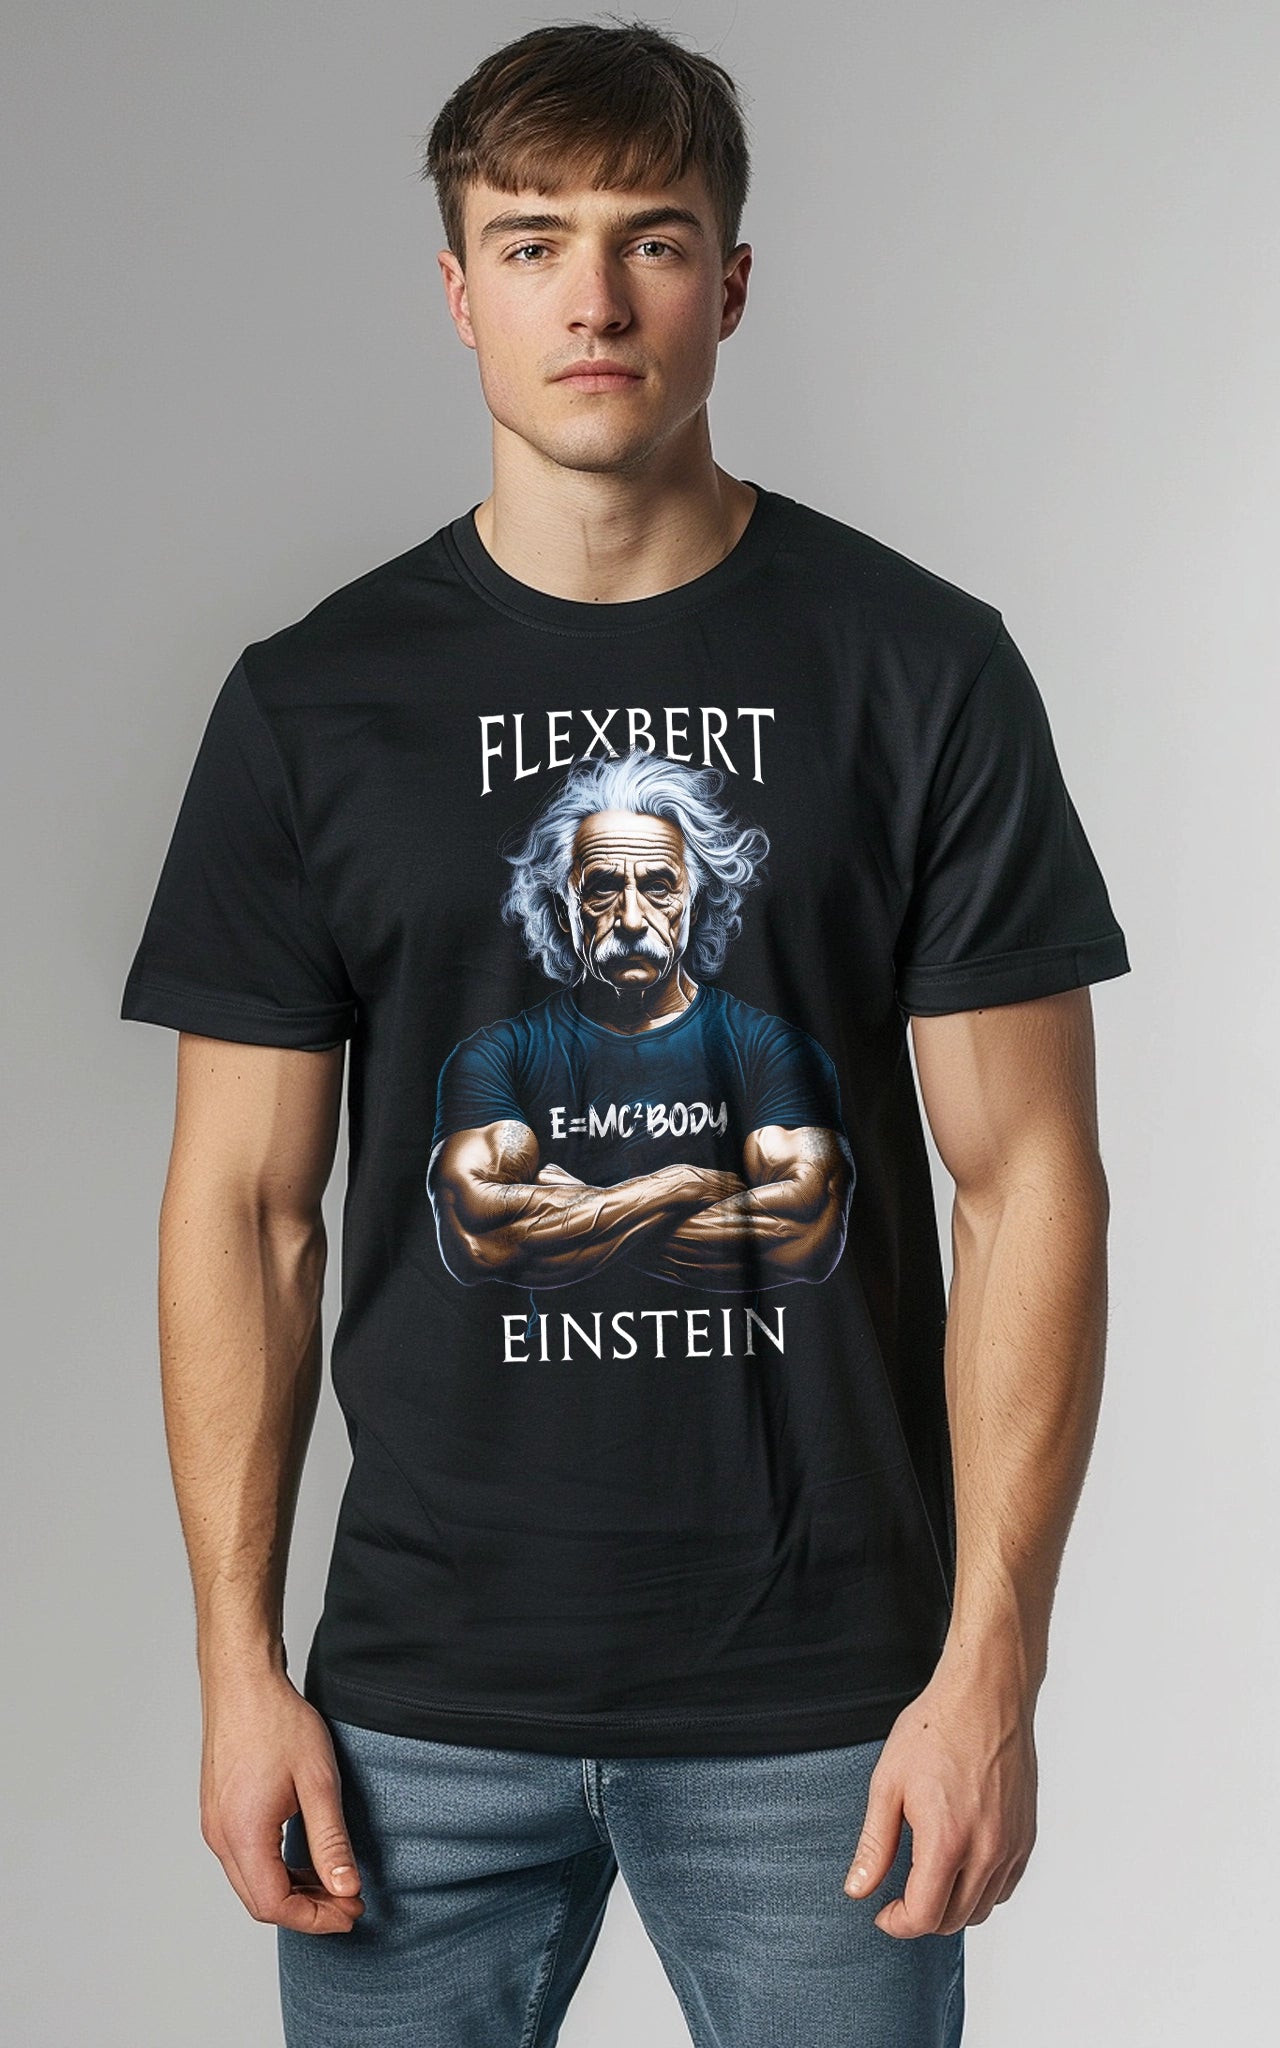 bodybuilder as Einstein Flexbert T-Shirt: Einstein humor – MOLESE unique Albert muscular a JOE